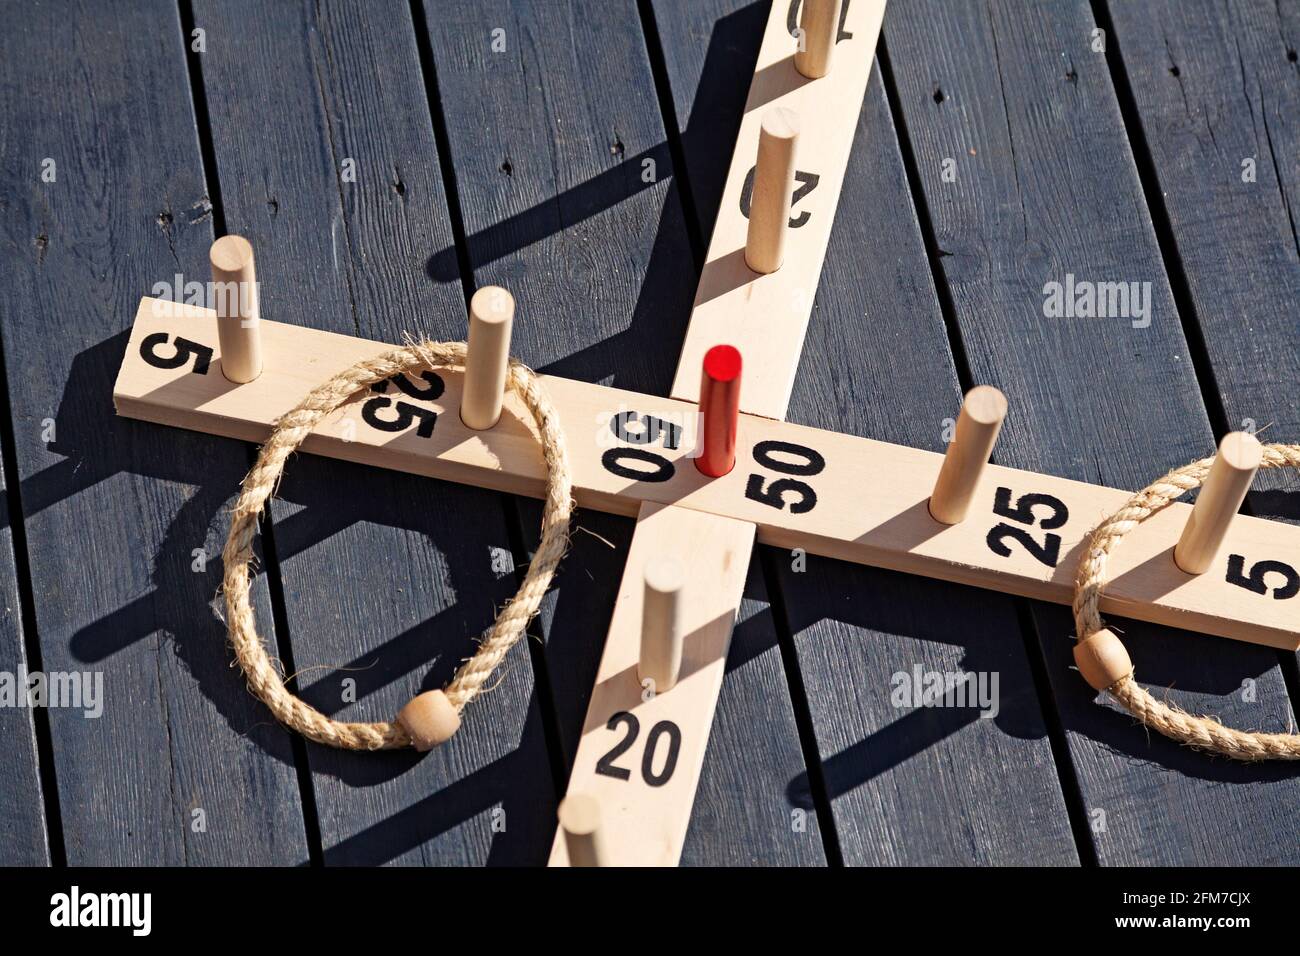 jeux pour usage extérieur avec des anneaux et des bâtons en bois Banque D'Images